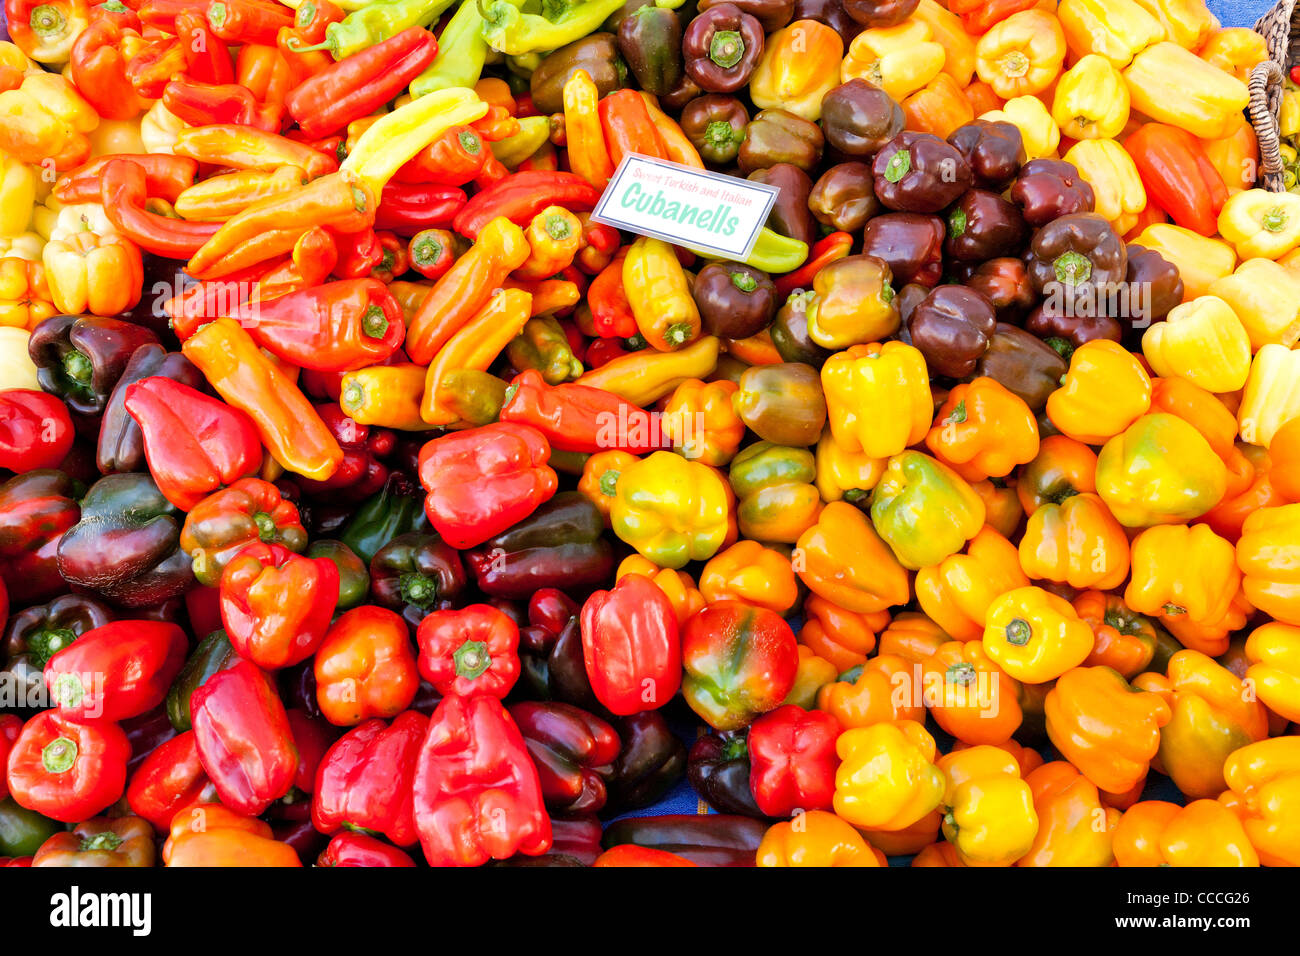 Turque et italienne bio poivrons Cubanelle at farmers market - San Francisco, California USA Banque D'Images